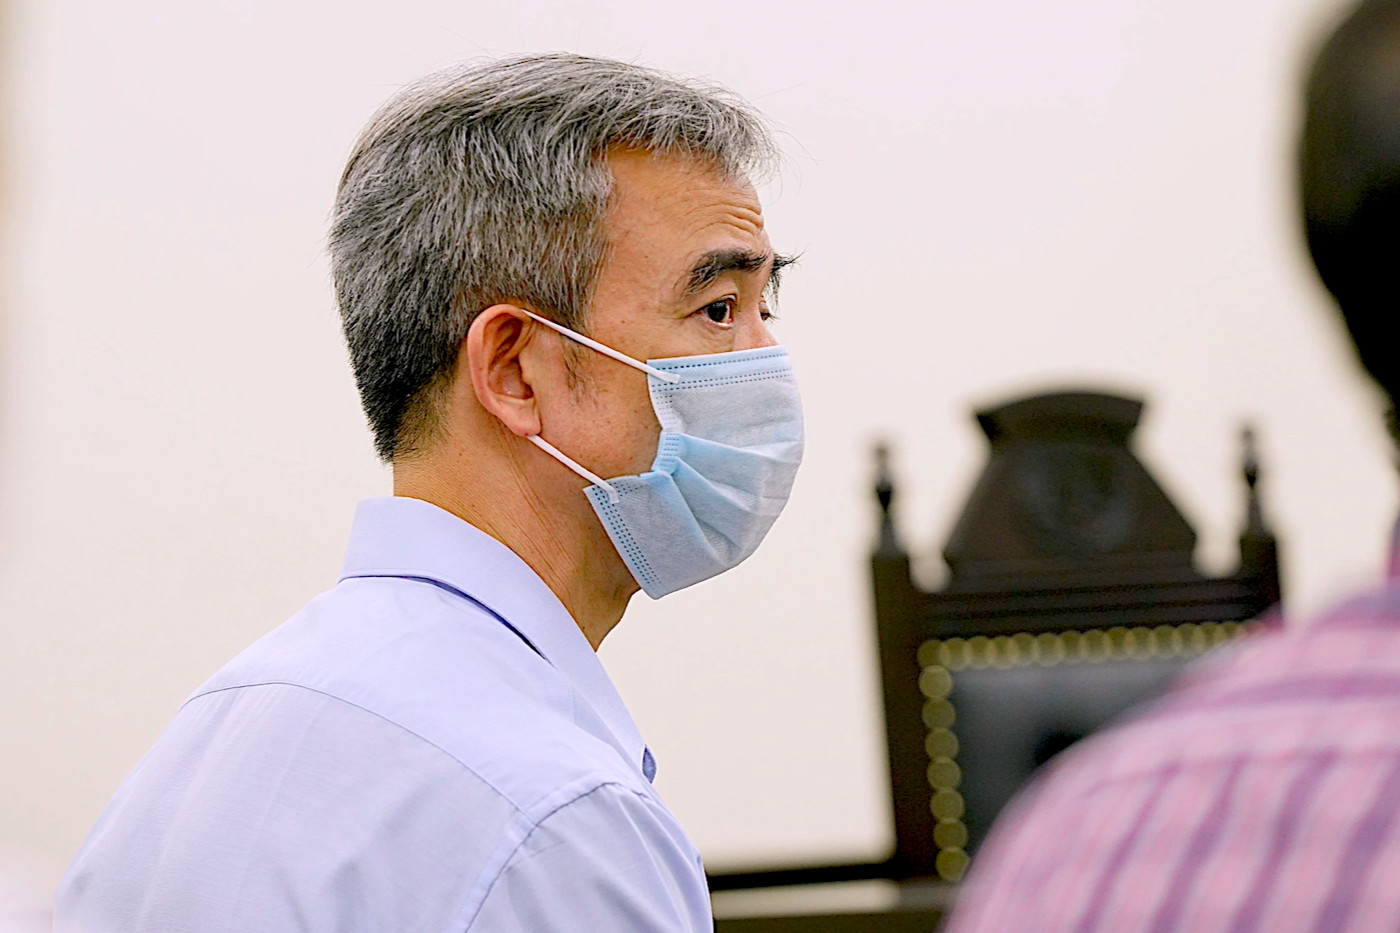 Ông Nguyễn Quang Tuấn nói bị bệnh tim, xin giảm hình phạt cho bị cáo khác - 1